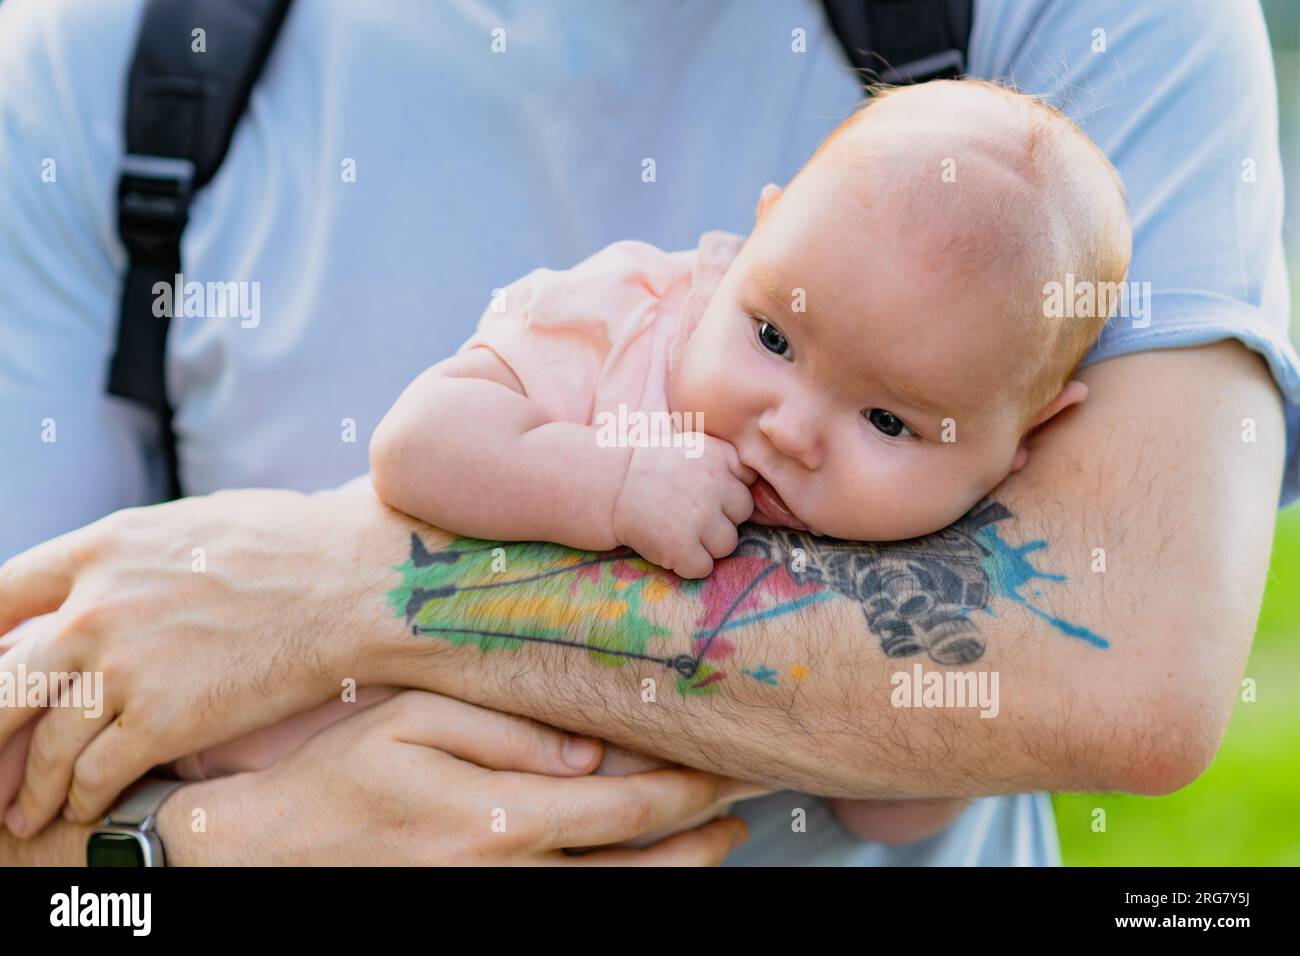 Un père avec un tatouage berce un nouveau-né tout en se tenant dans la rue. Banque D'Images